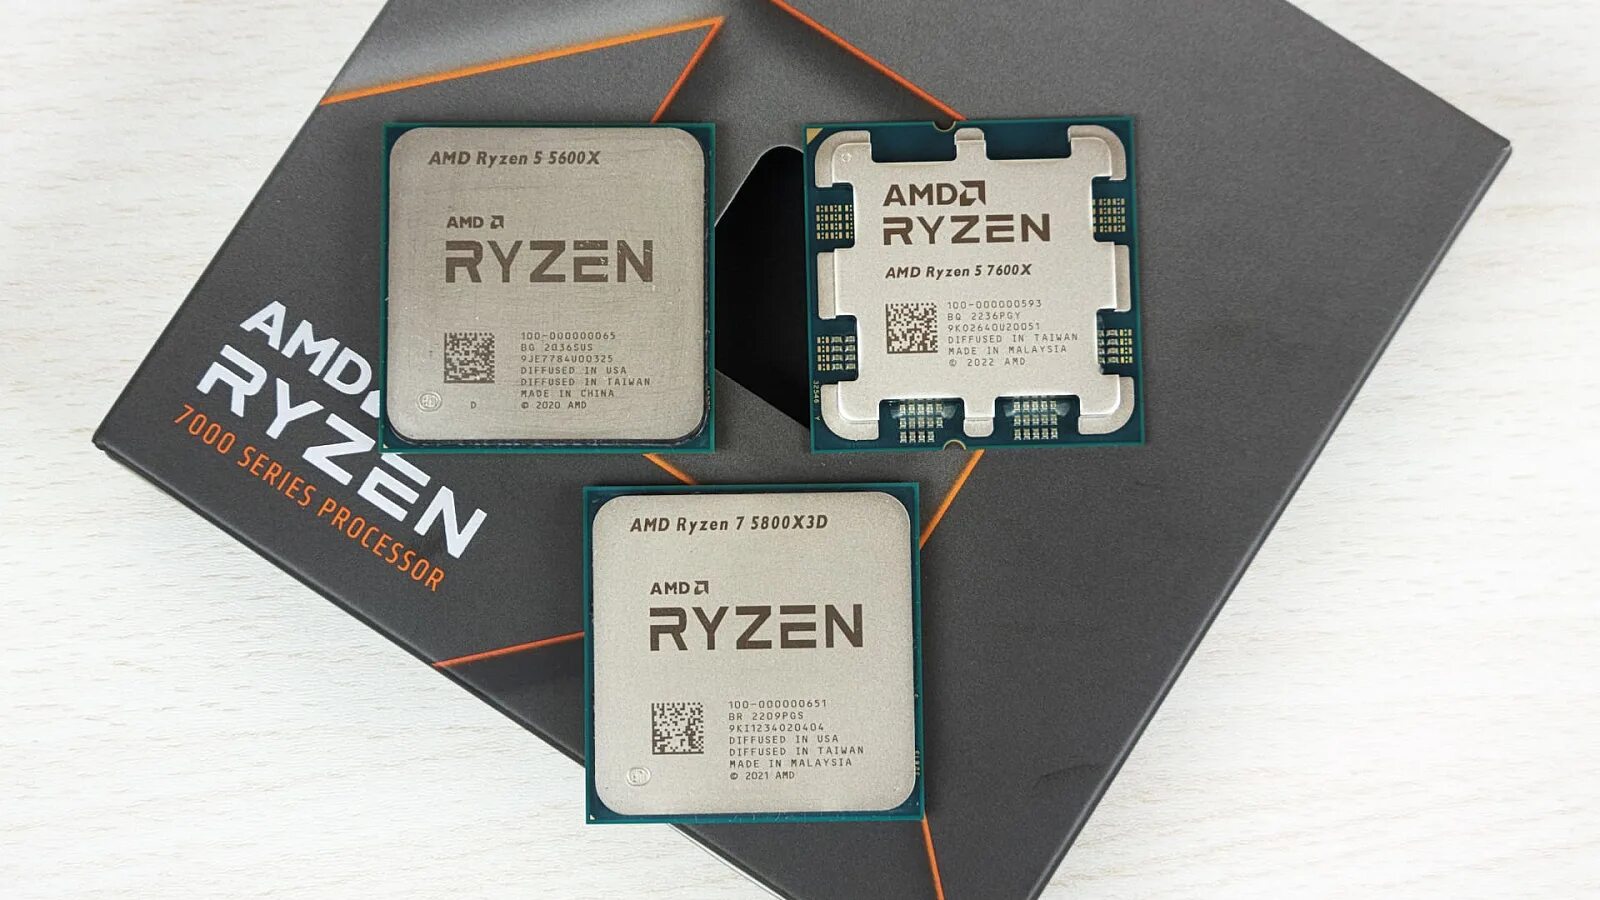 Ryzen 7600x. Ryzen 5 7600x. AMD Ryzen 5 7600x am5, 6 x 4700 МГЦ. AMD Ryzen 5 7600x 6-Core Processor 4.70 GHZ. R5 7600